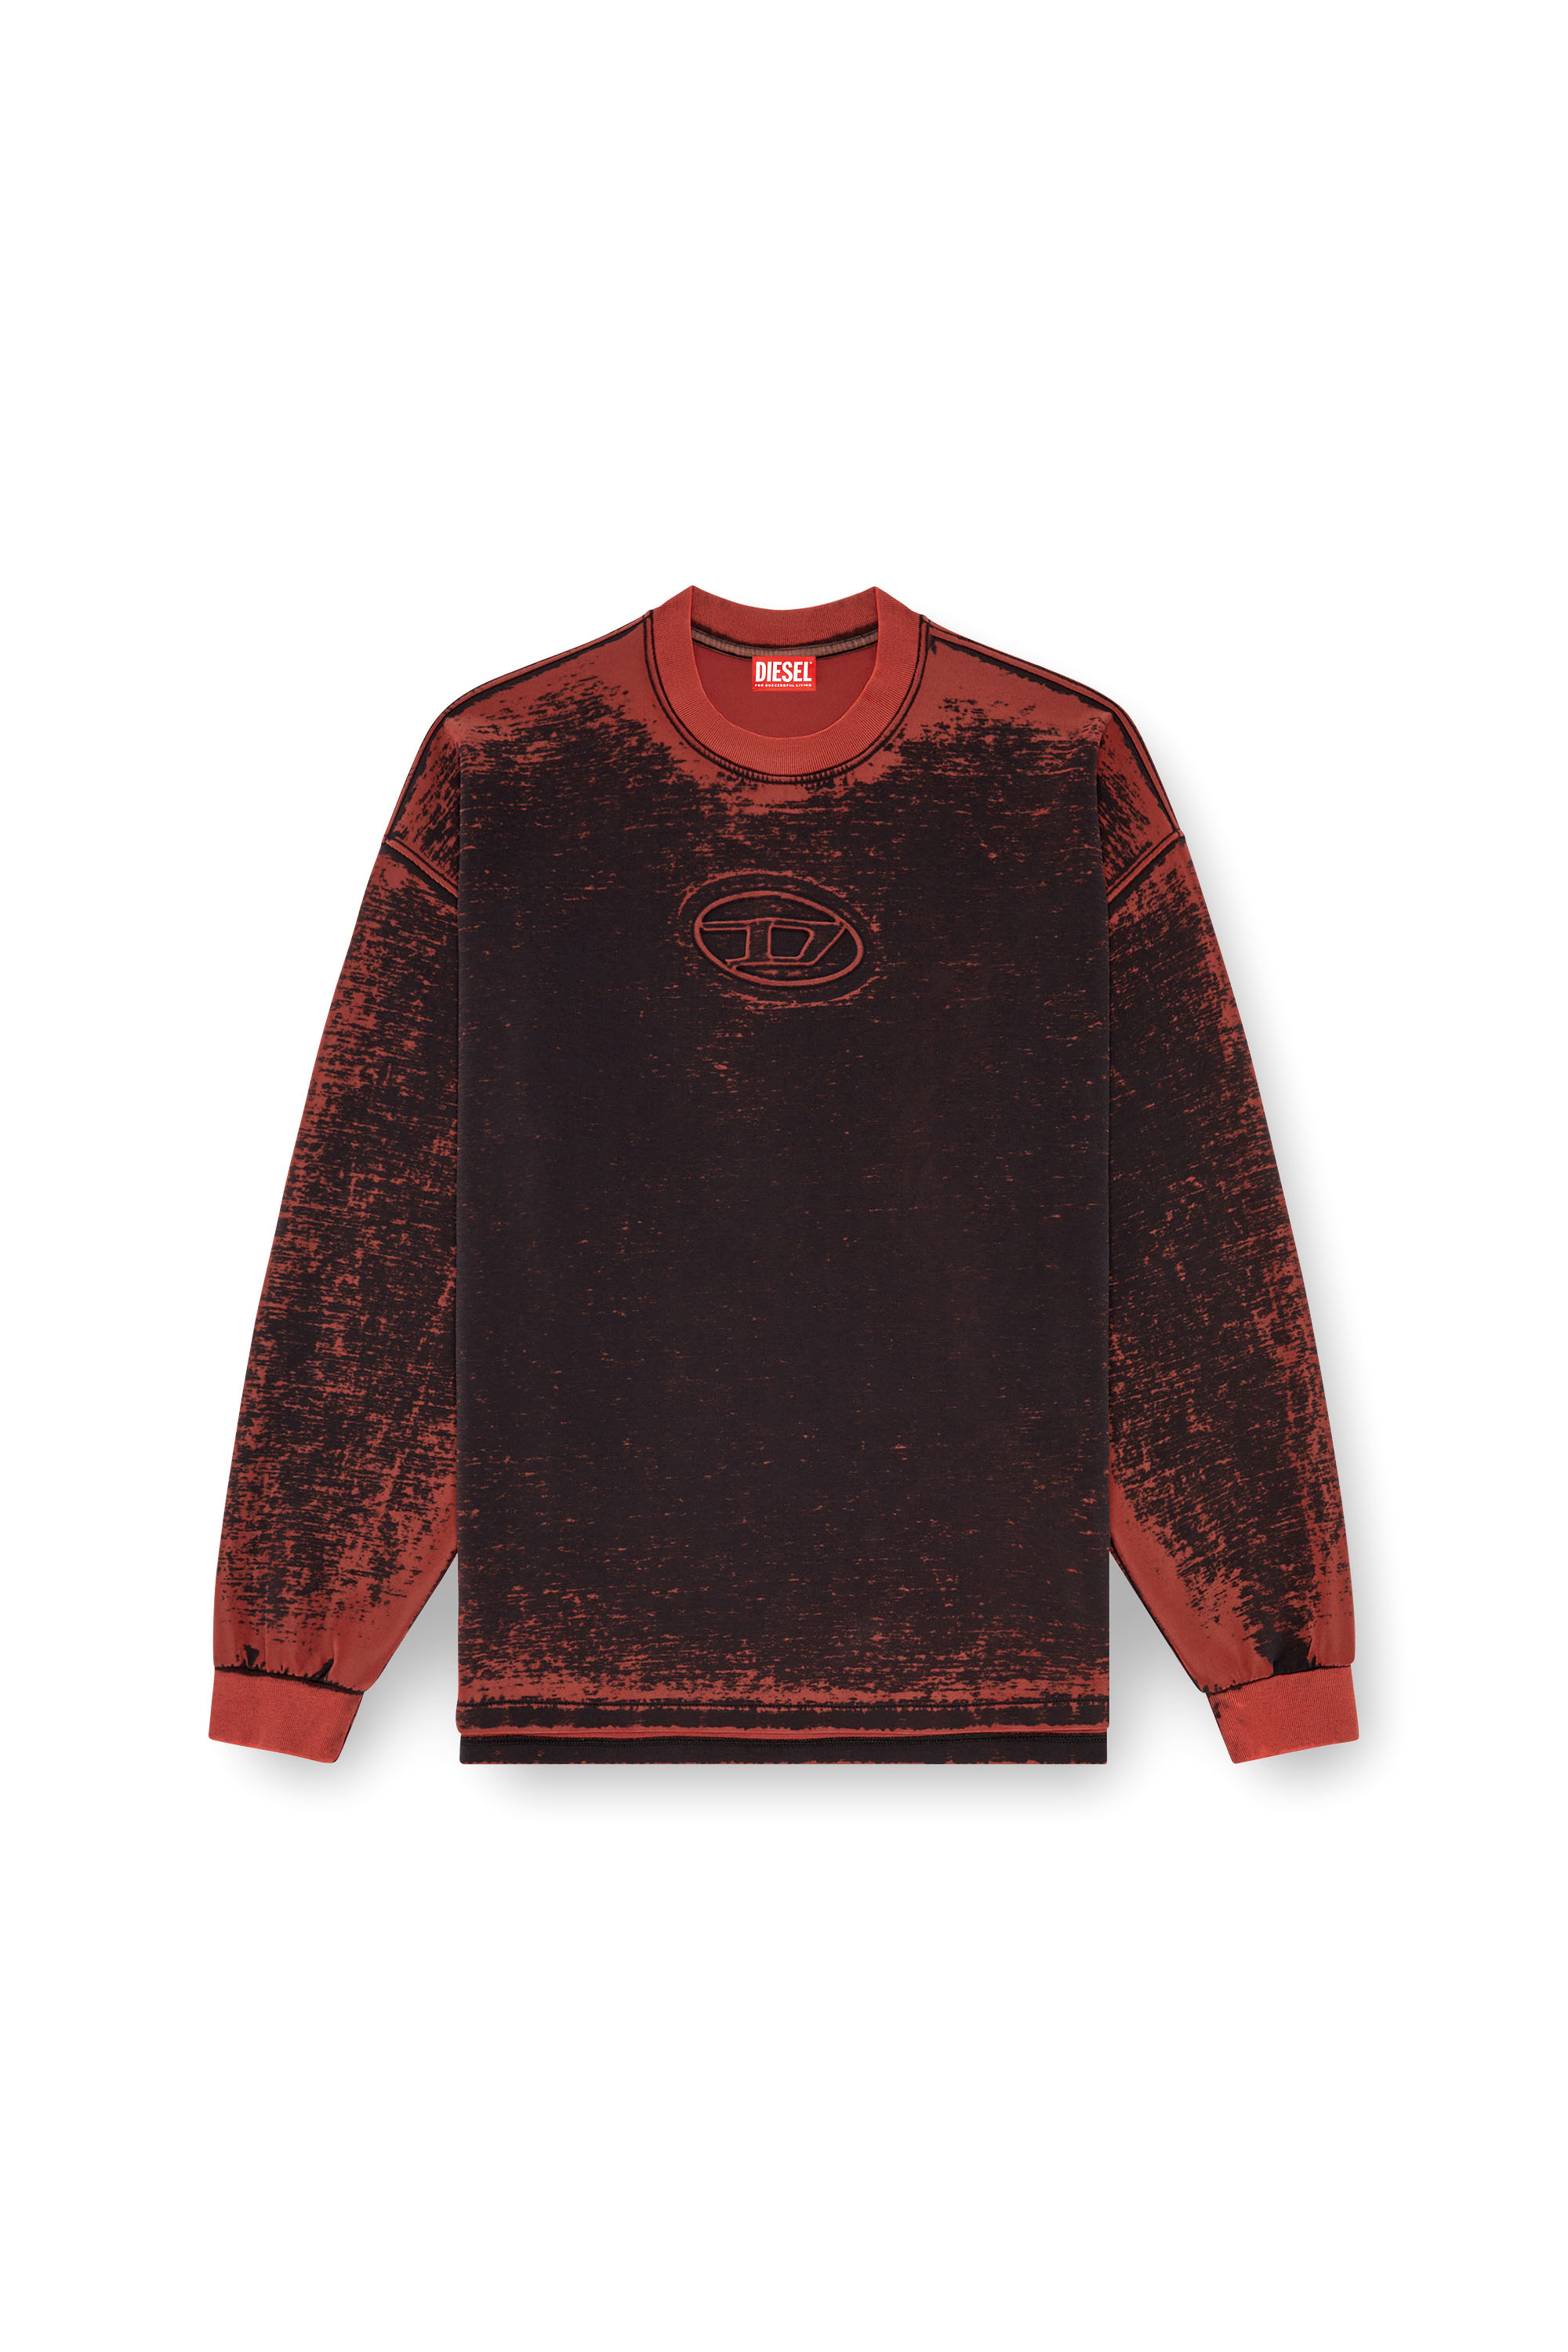 Diesel - S-BAXT-Q1, Homme Sweat-shirt découpé avec Oval D embossé in Rouge - Image 3